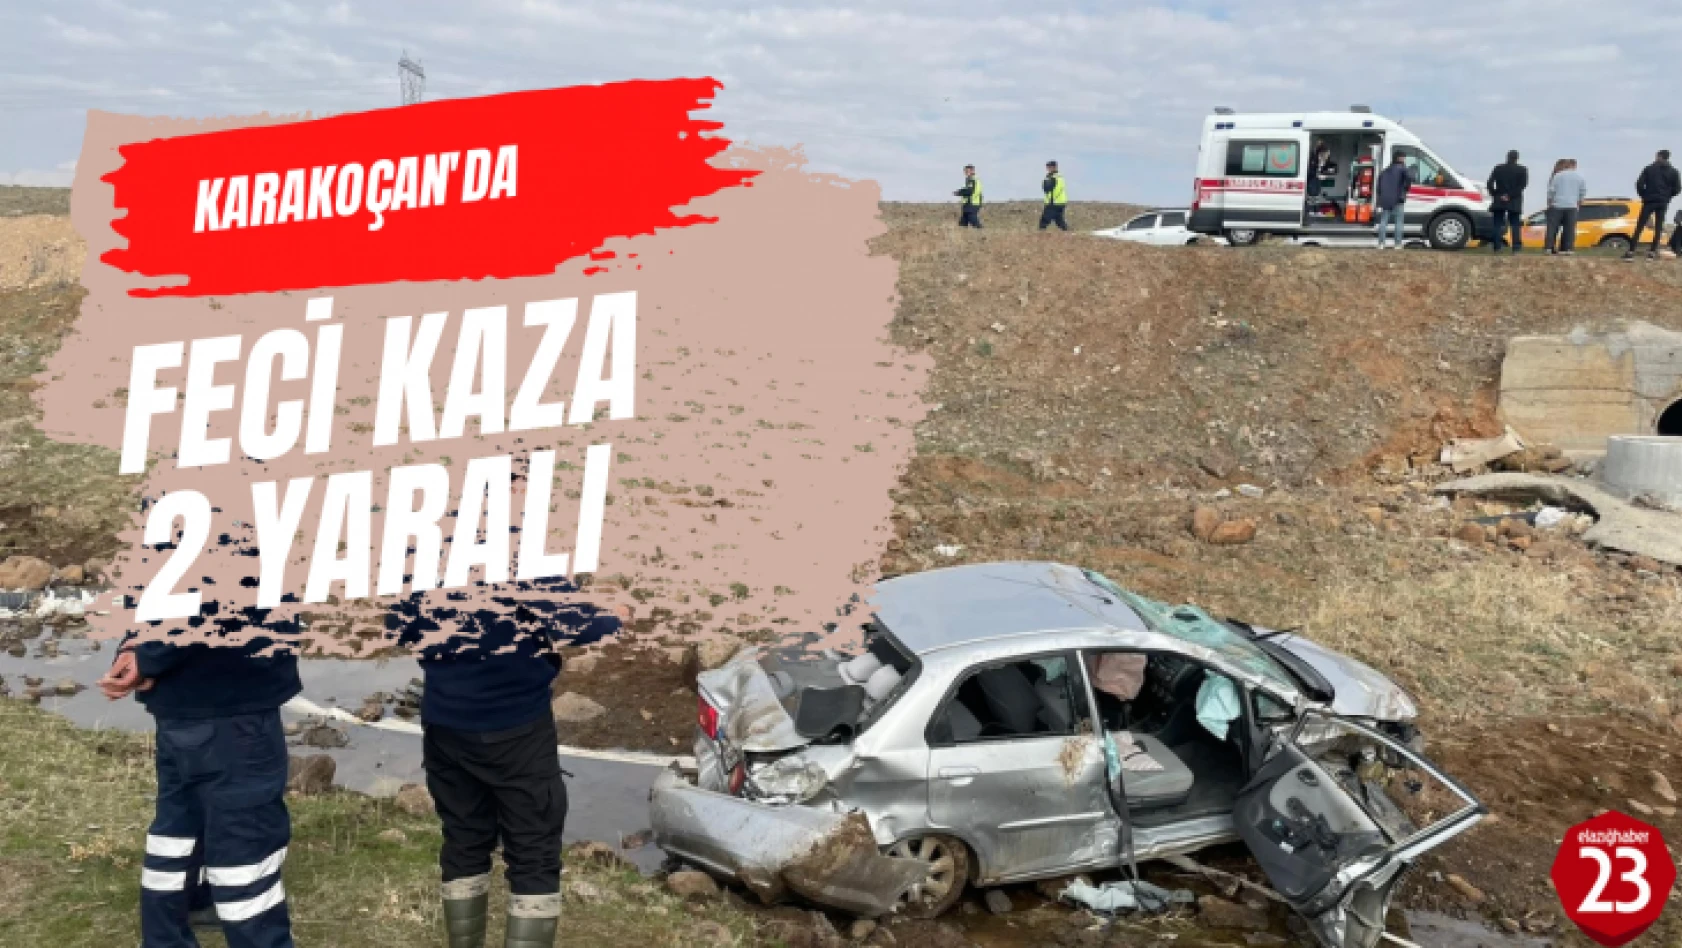 Karakoçan'da Araç Şarampole Yuvarlandı, 2 Yaralı